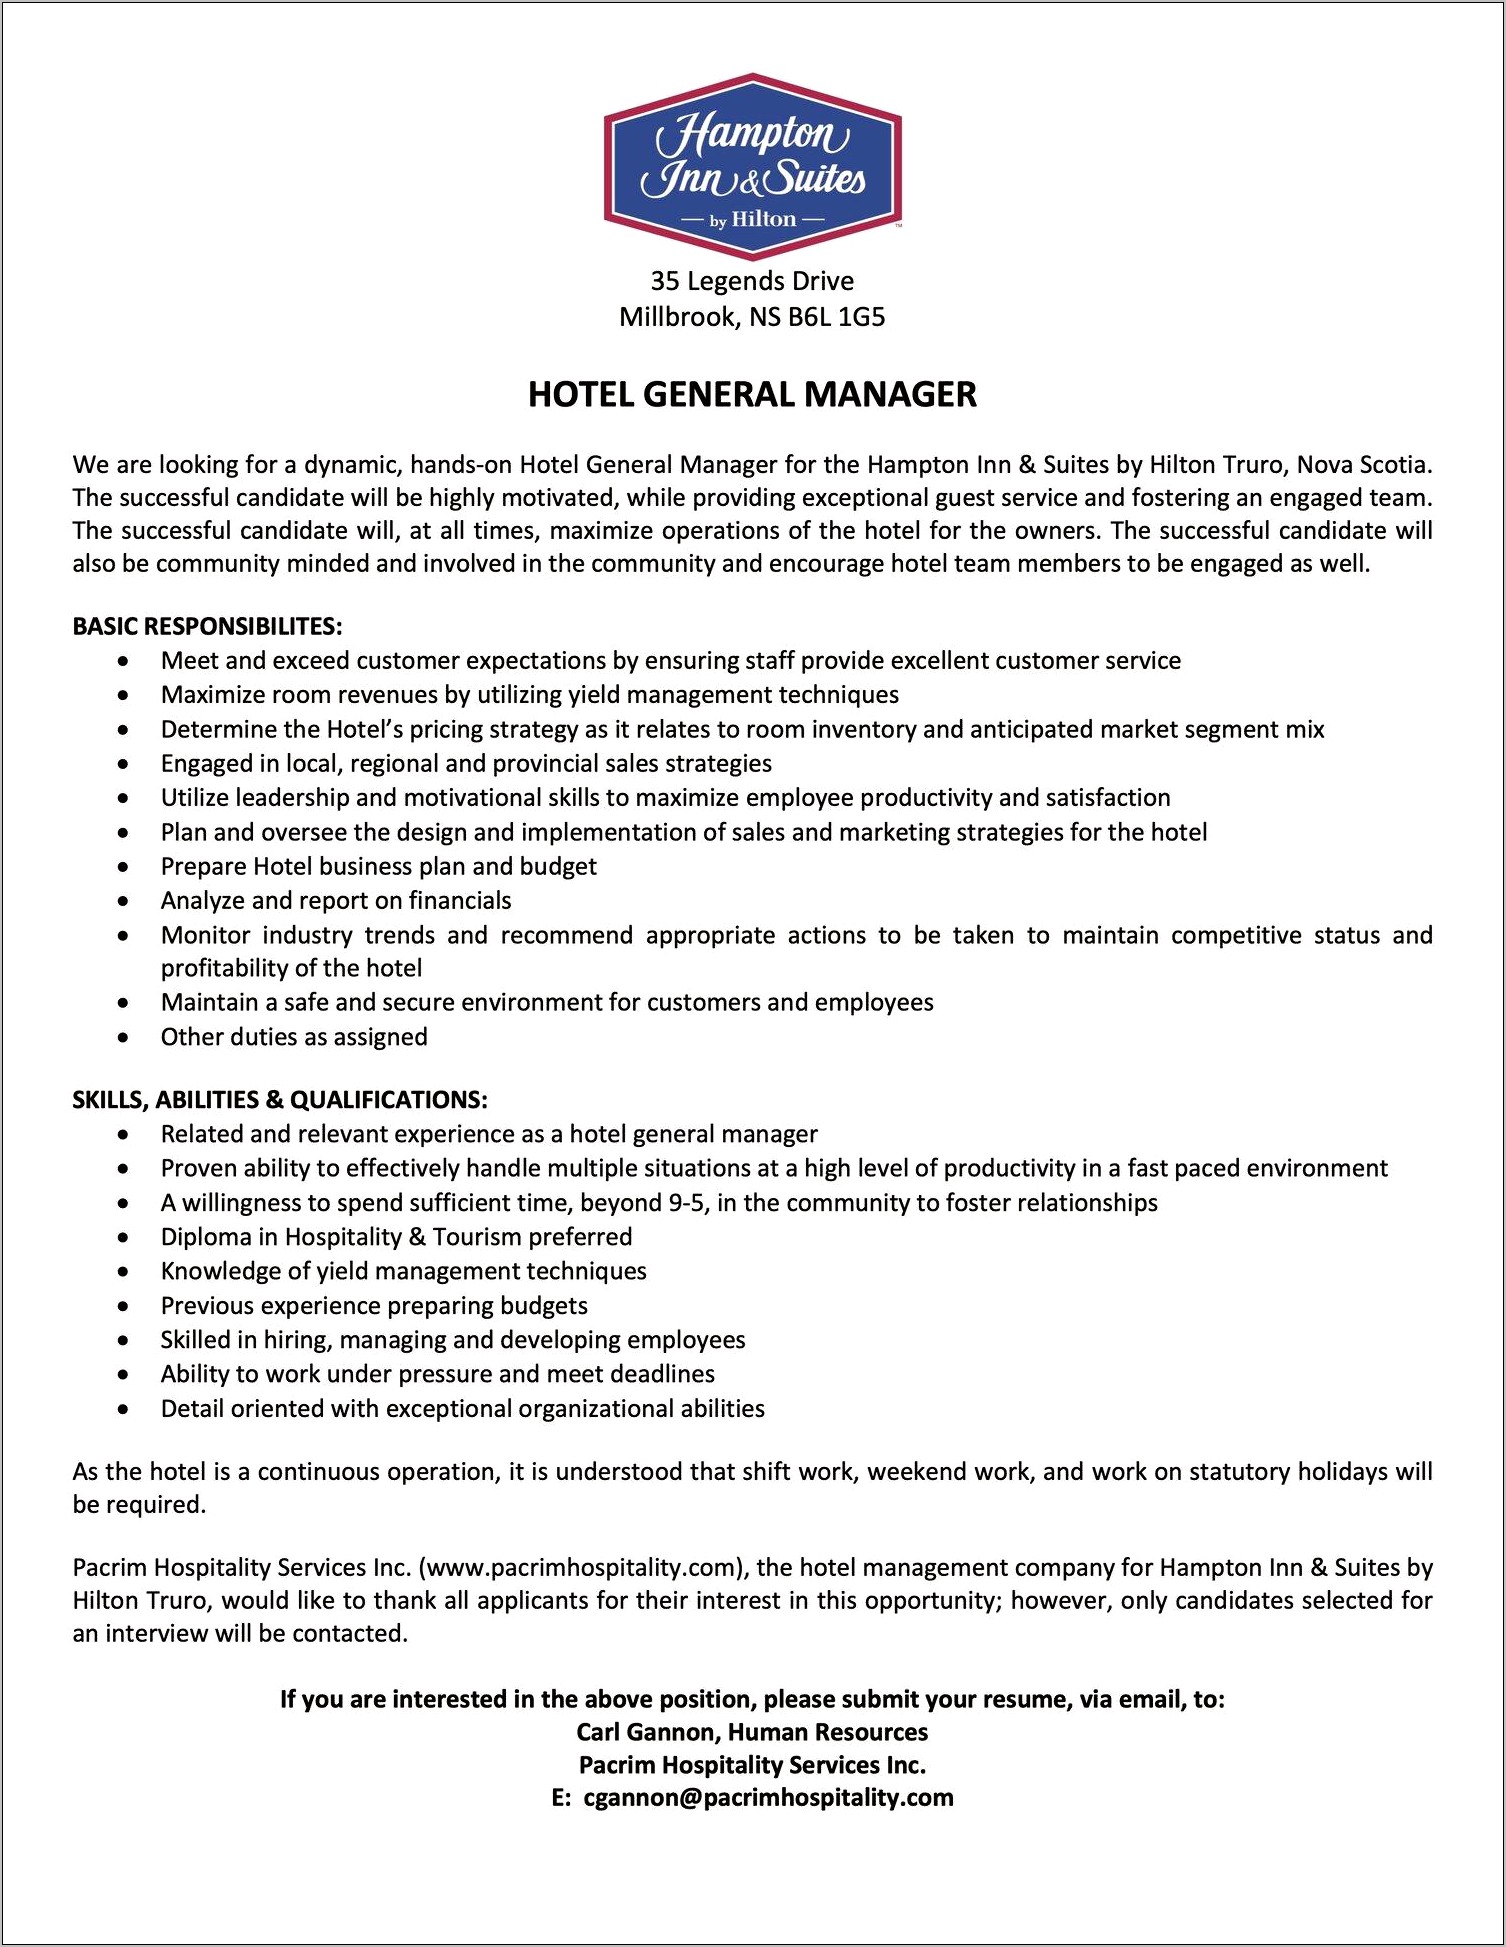 Hotel General Manager Job Description Resume